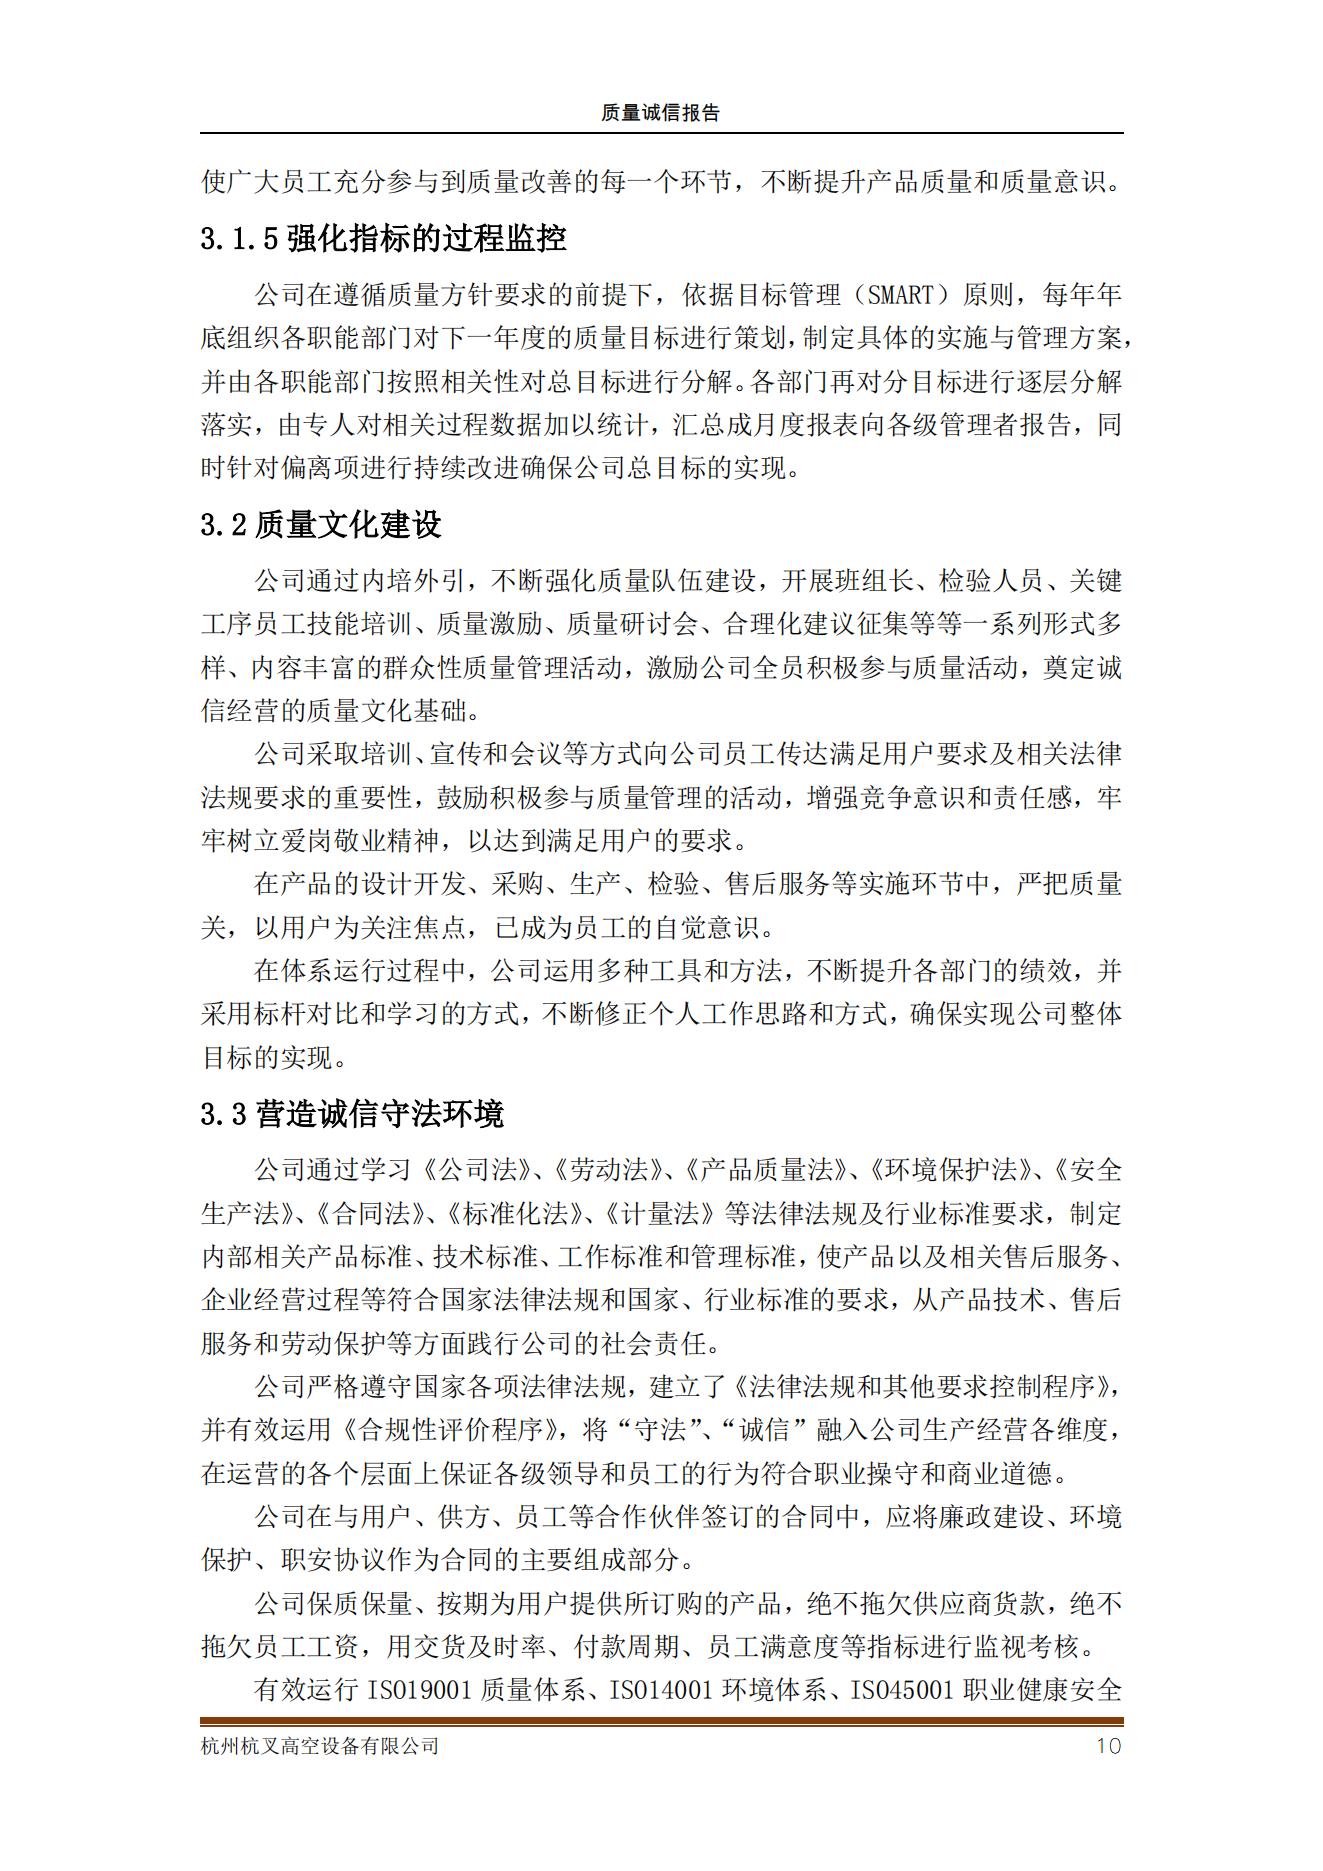 杭州杭叉高空设备公司2021年质量诚信报告(图10)